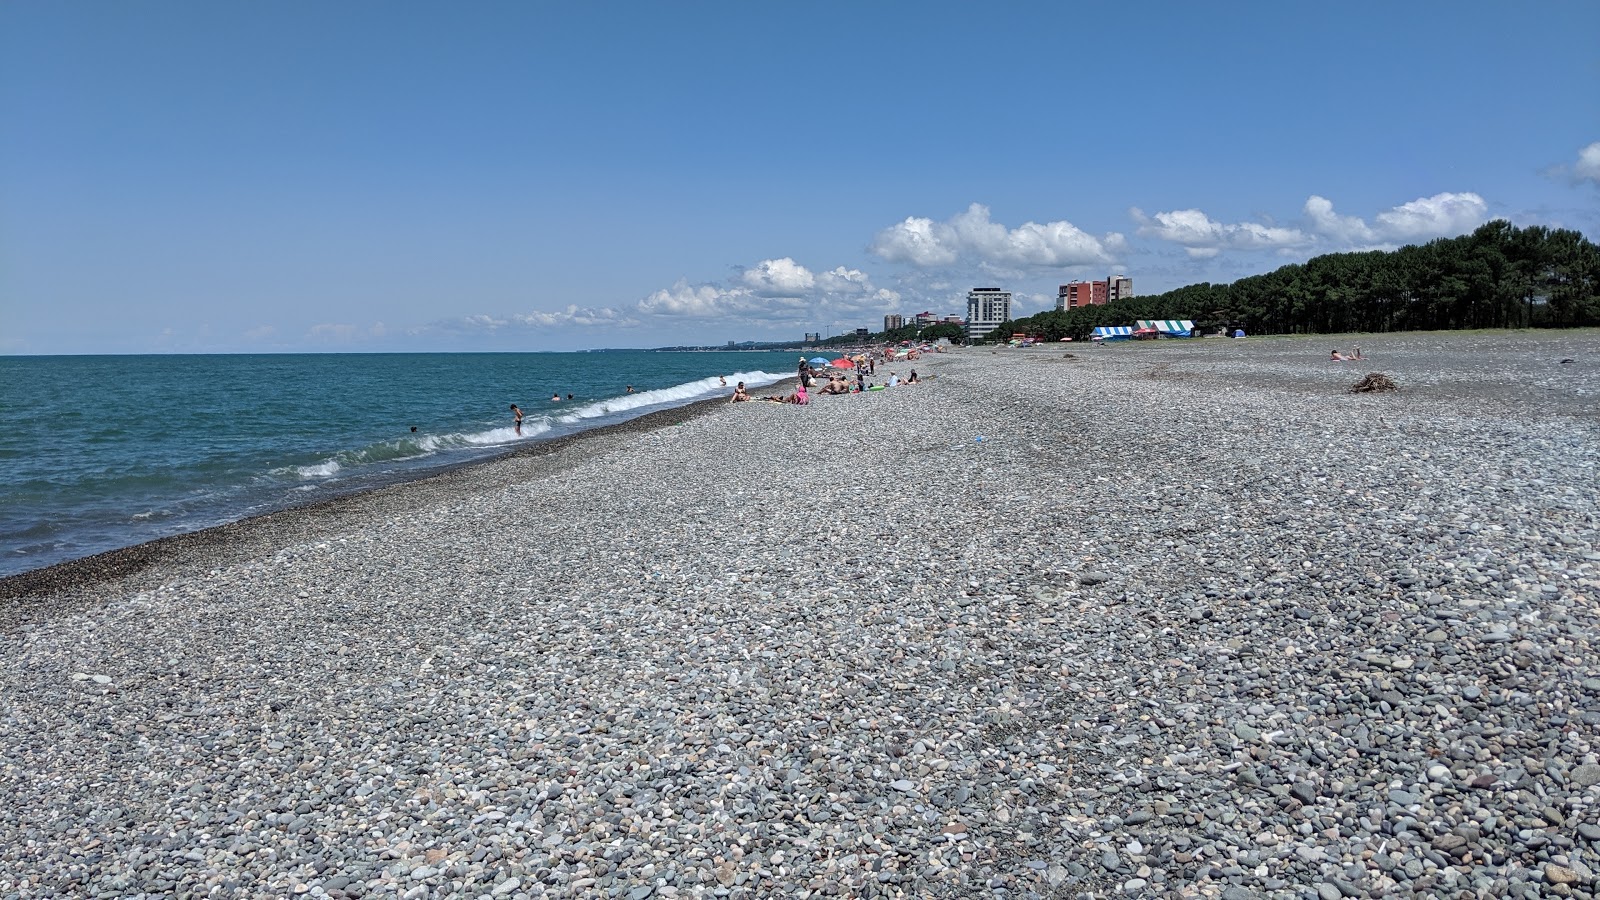 Zdjęcie Kobuleti beach z powierzchnią szary kamyk